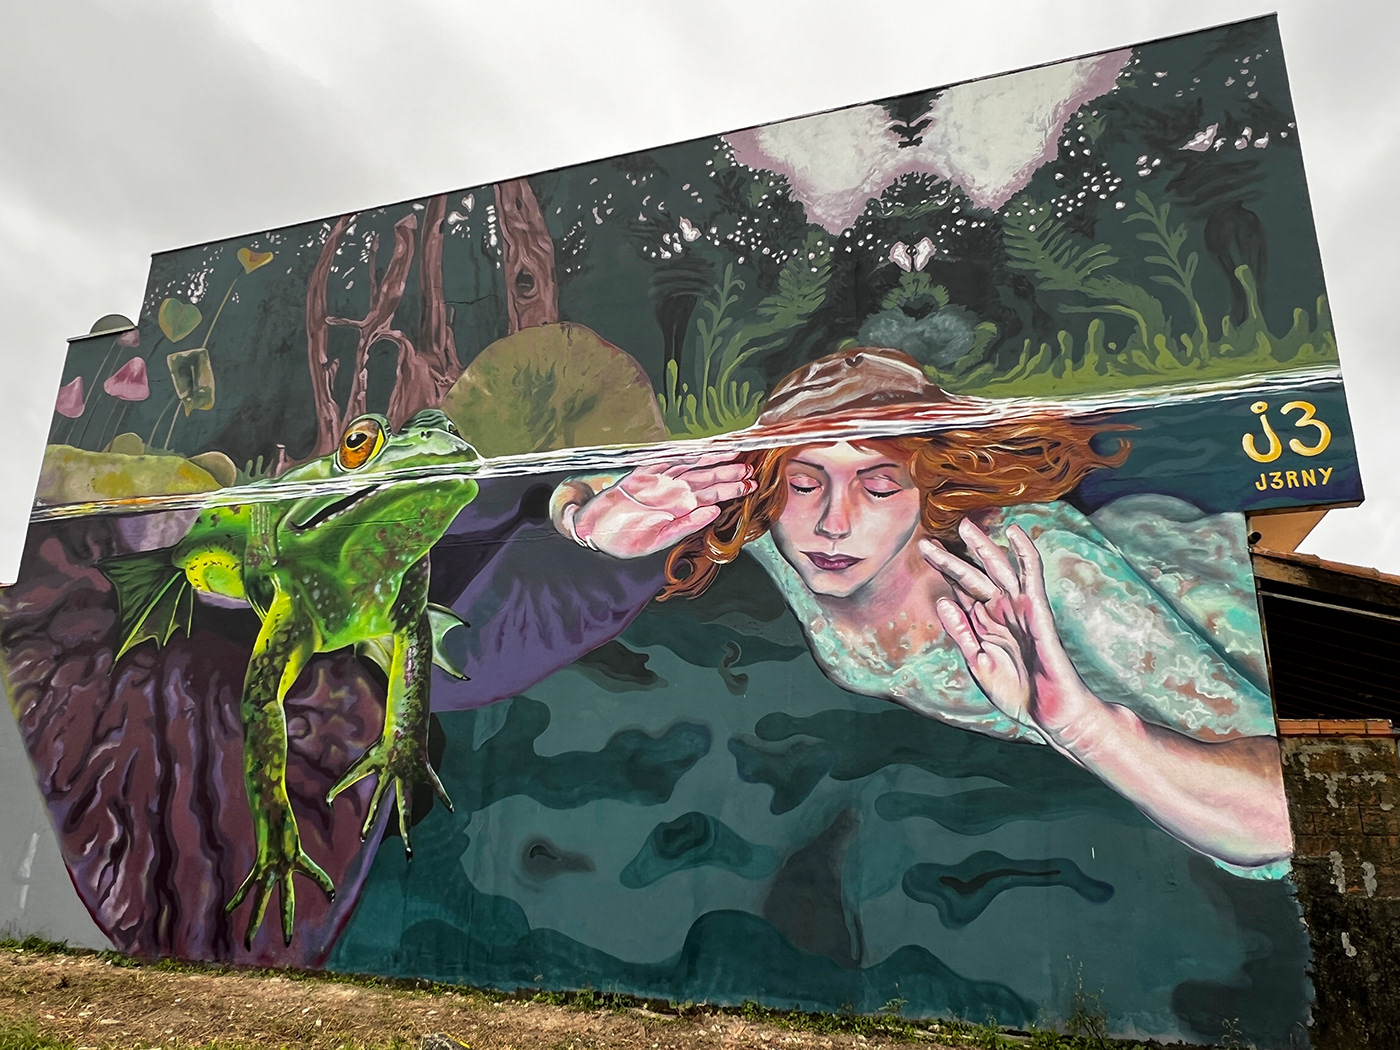 frog Mural Nature serenity spiritual streetart swimming underwater Graffiti wall art